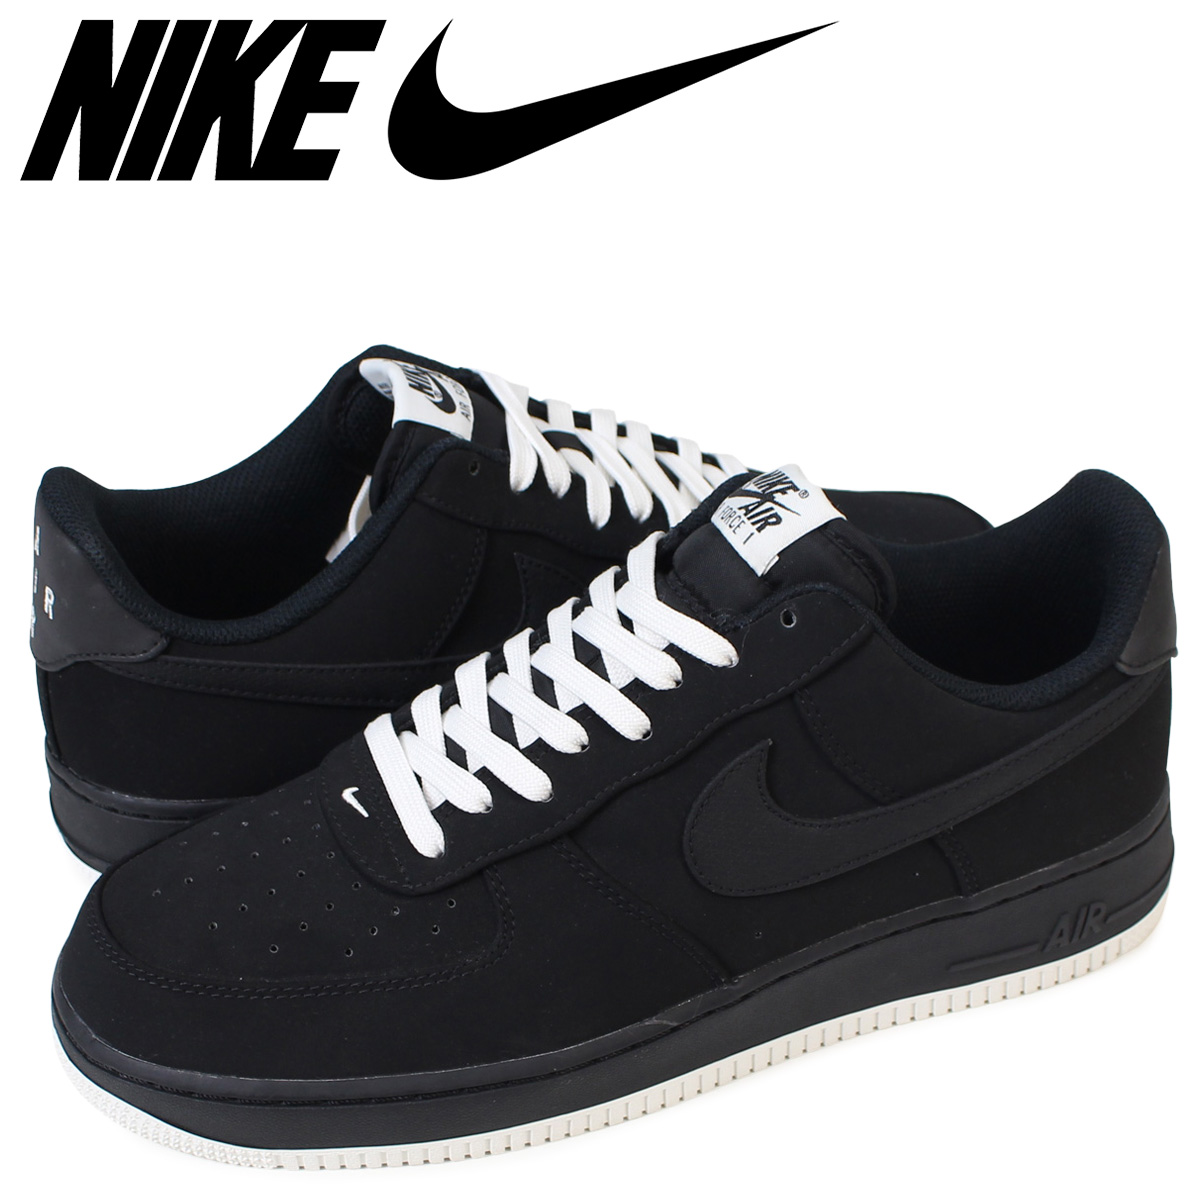 Sugar Online Shop: NIKE Nike air force 1 sneakers AIR FORCE 1 SP 